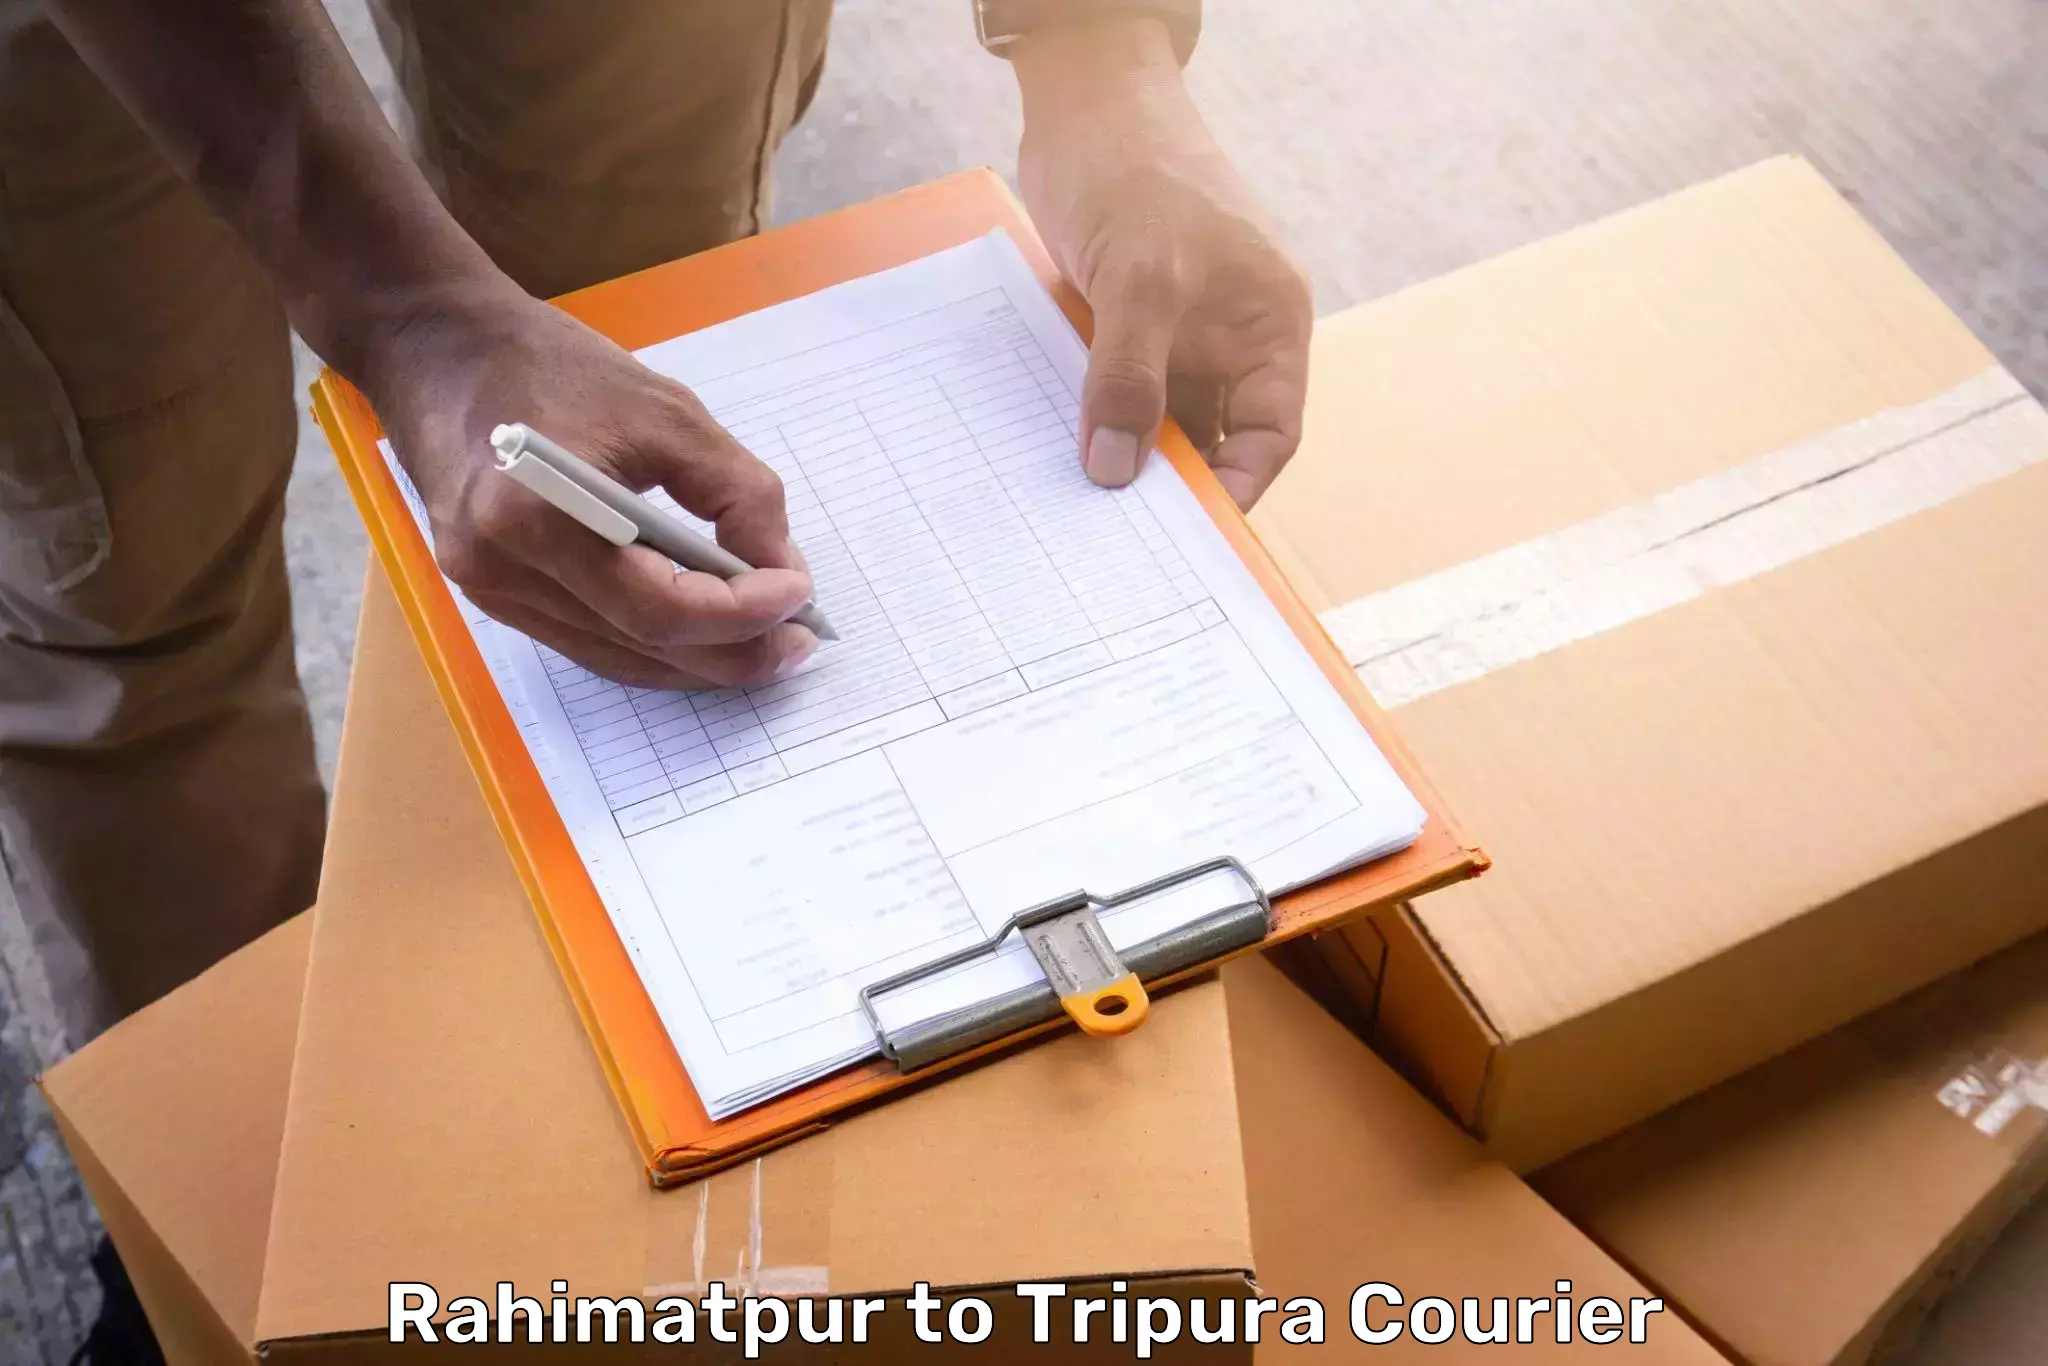 Baggage transport innovation Rahimatpur to Kamalpur